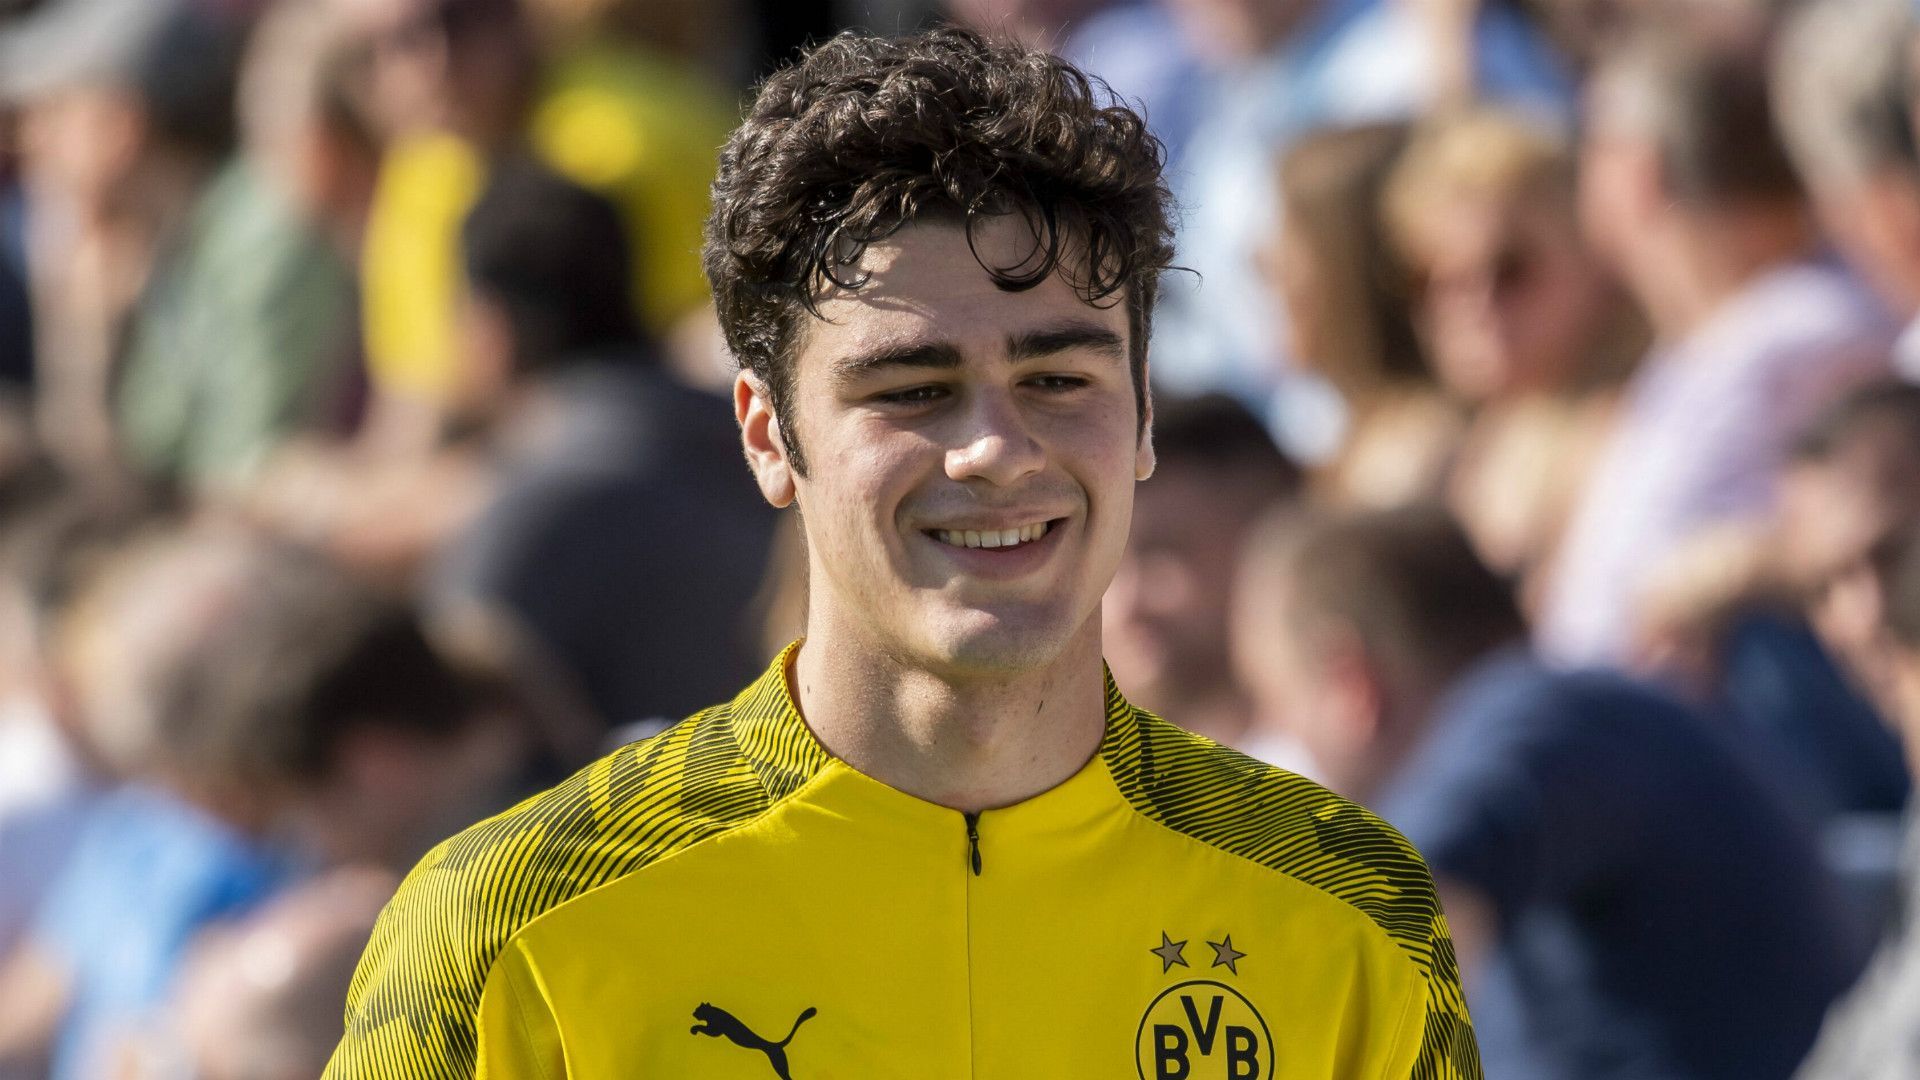 23º - Giovanni Reyna - Comparado com Pulisic, o meia americano Reyna vem dando seus primeiros passos no Borussia Dortmund. O garoto de 17 anos vem chamando a atenção na equipe alemã.